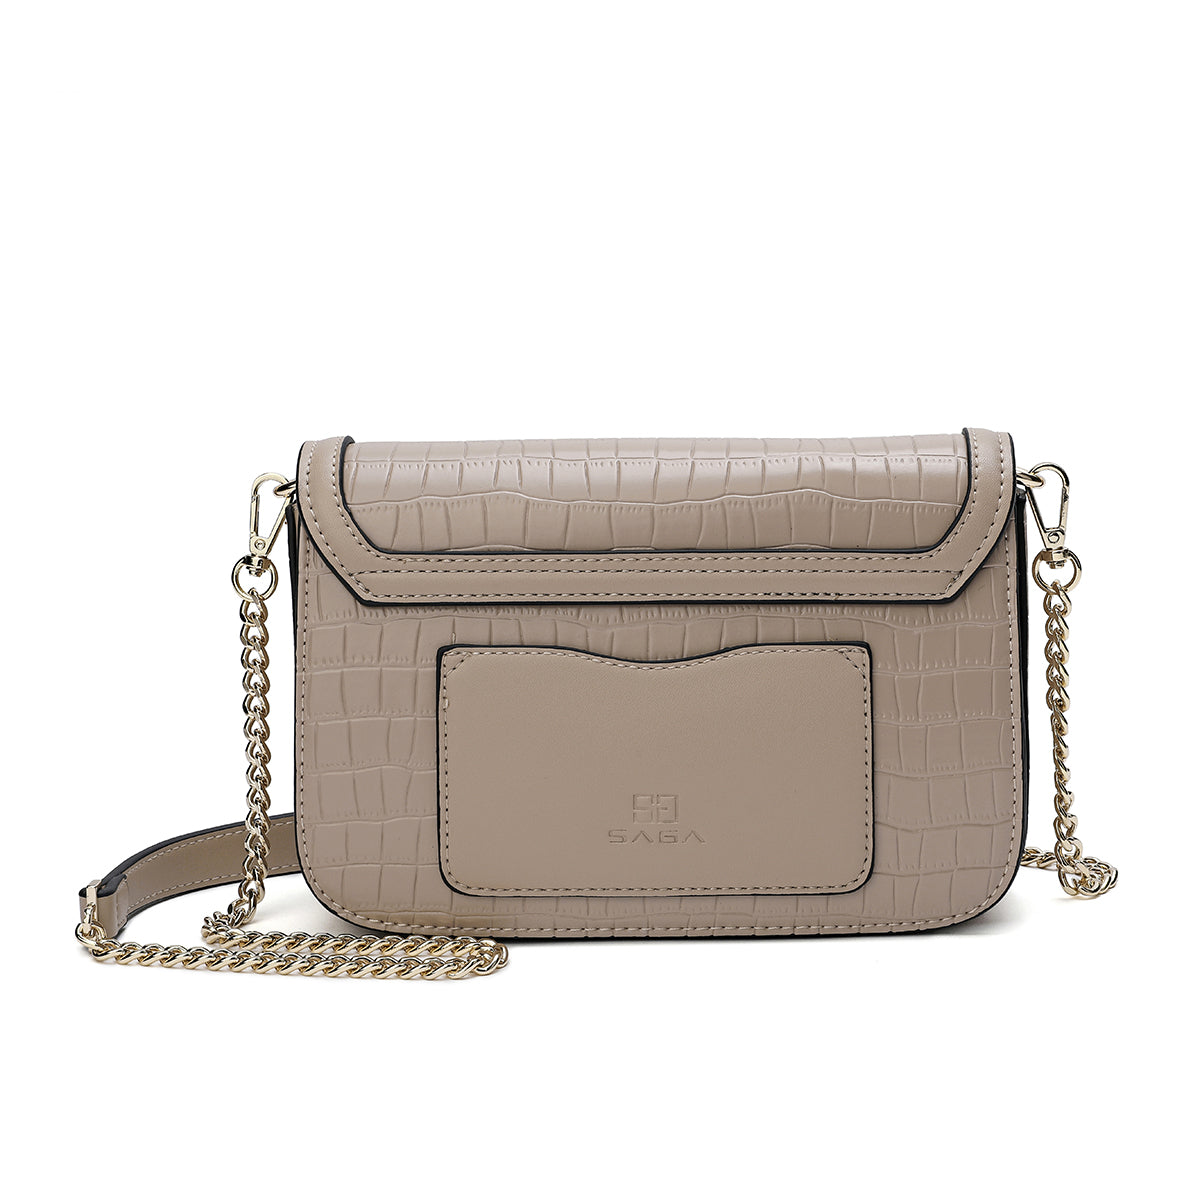 Elegant women's handbag, width 22 cm, cappuccino beige color